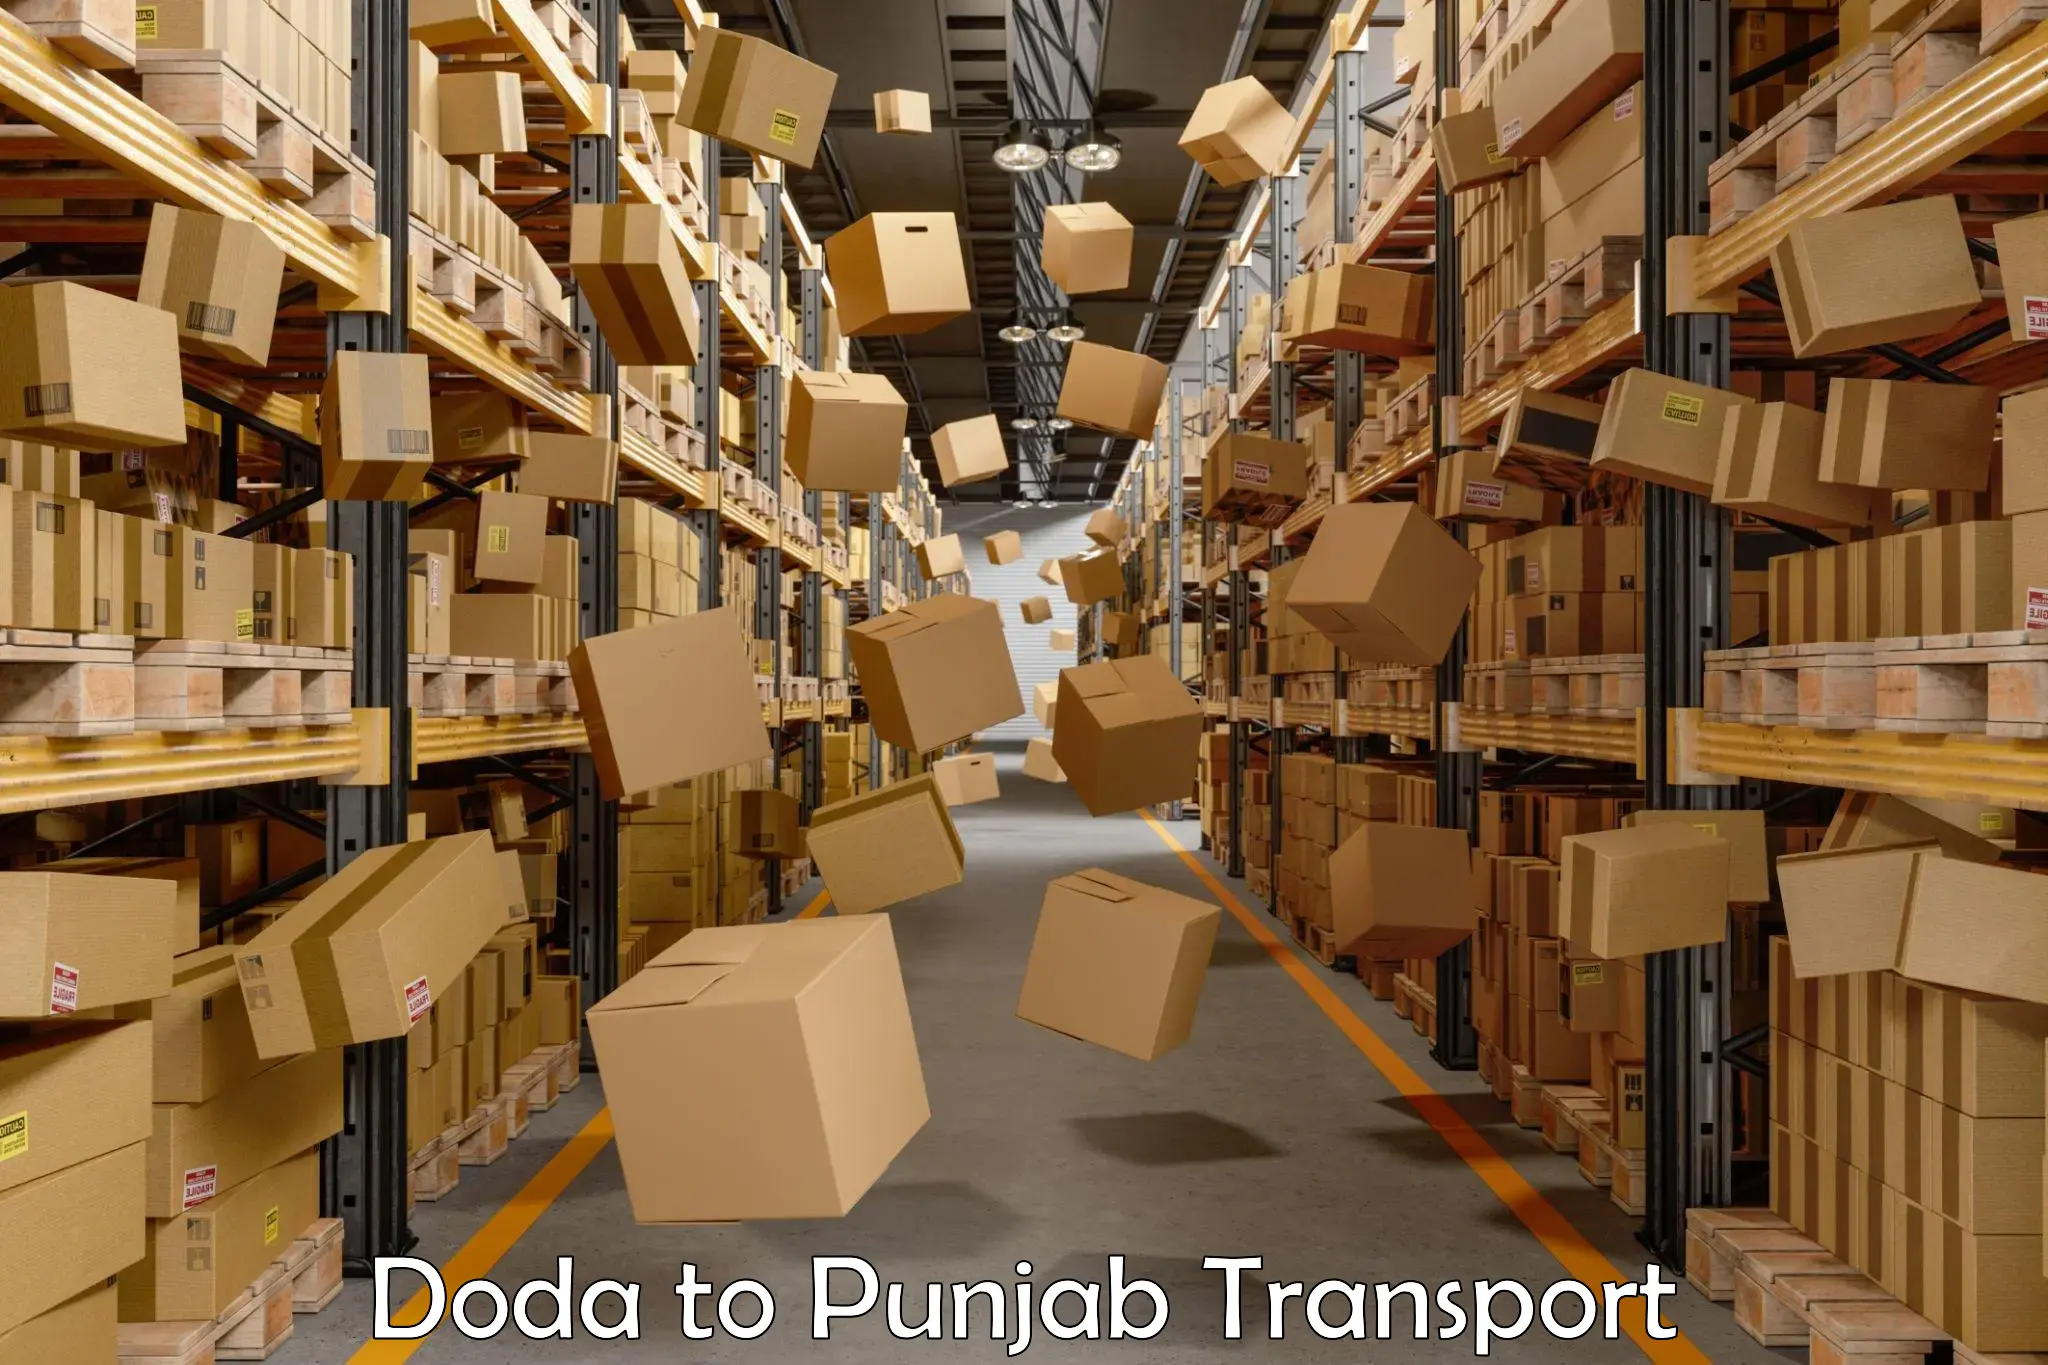 Lorry transport service Doda to Machhiwara